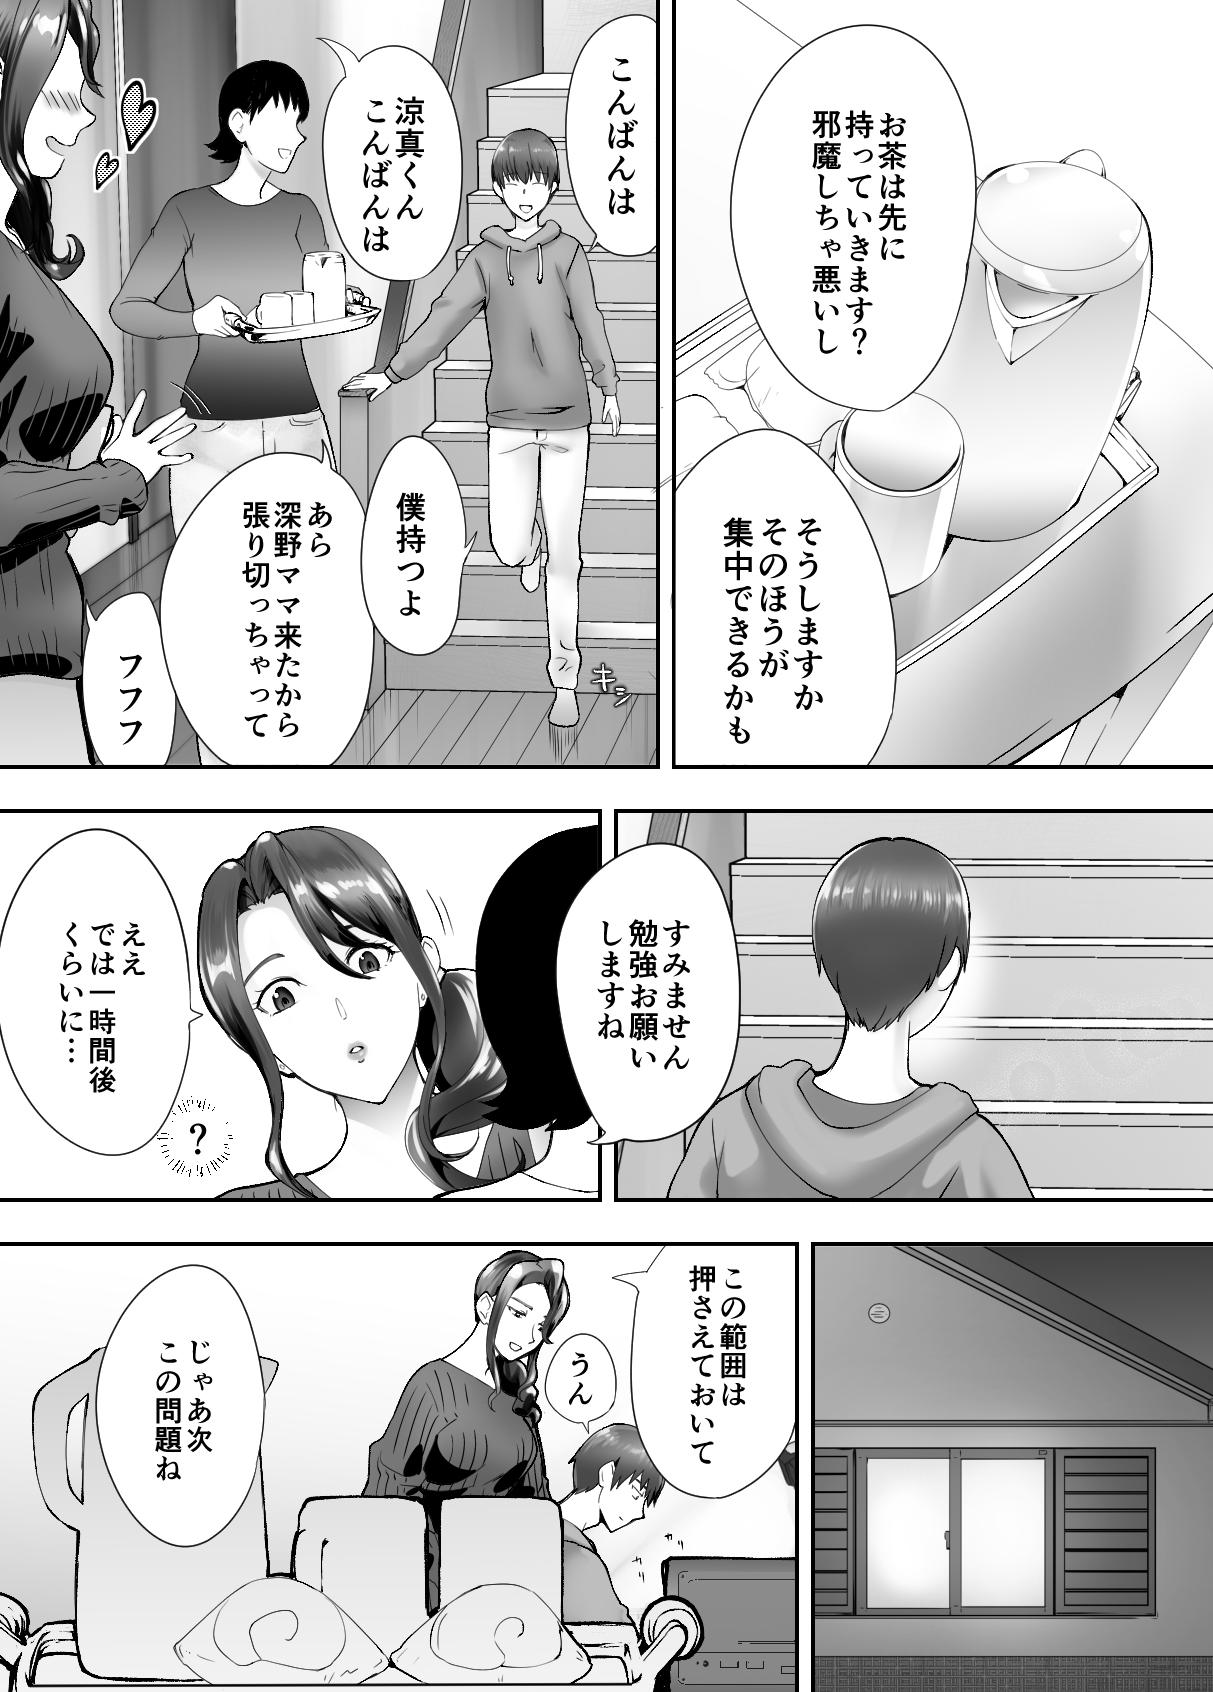 Gordinha Osananajimi ga Mama to Yatte Imasu. 4 - Original Ass Fucked - Page 3